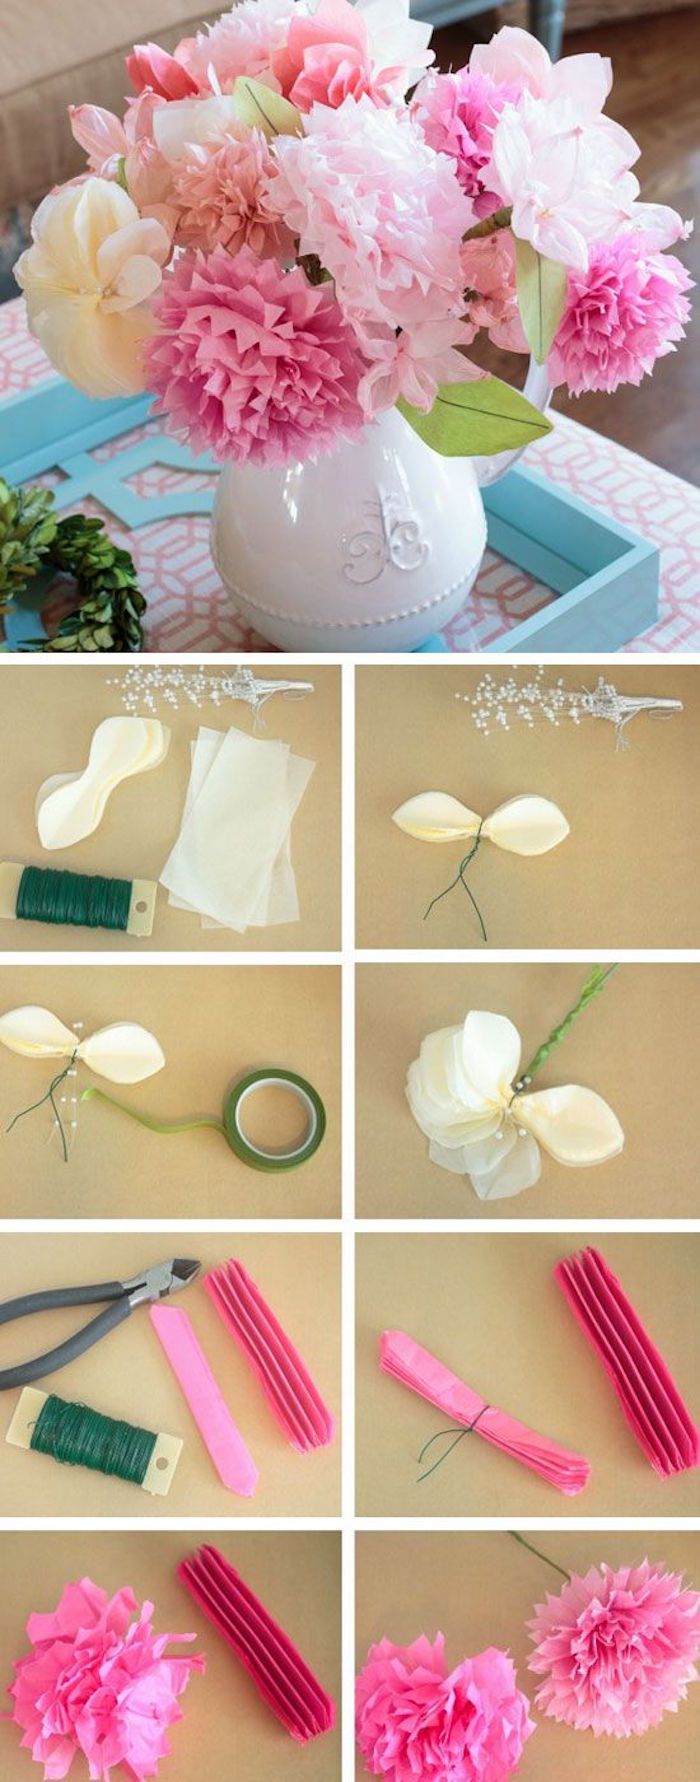 Ideea creativă, face flori din hârtie creponată, nu se usucă niciodată